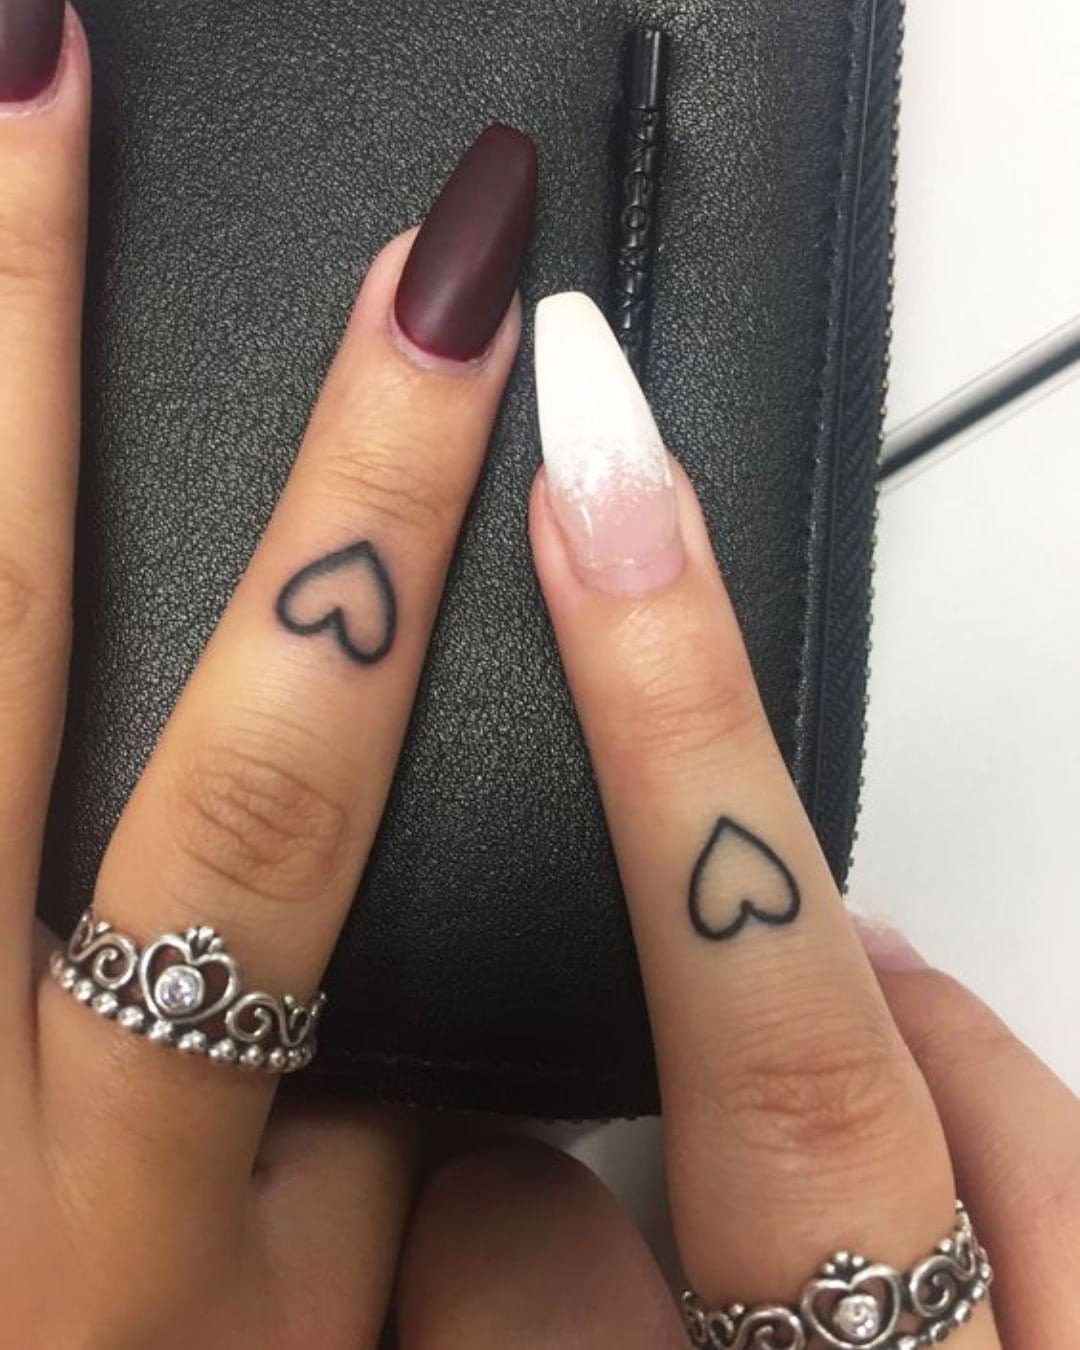 Matching Tattoos For Girls - Matching Tattoos